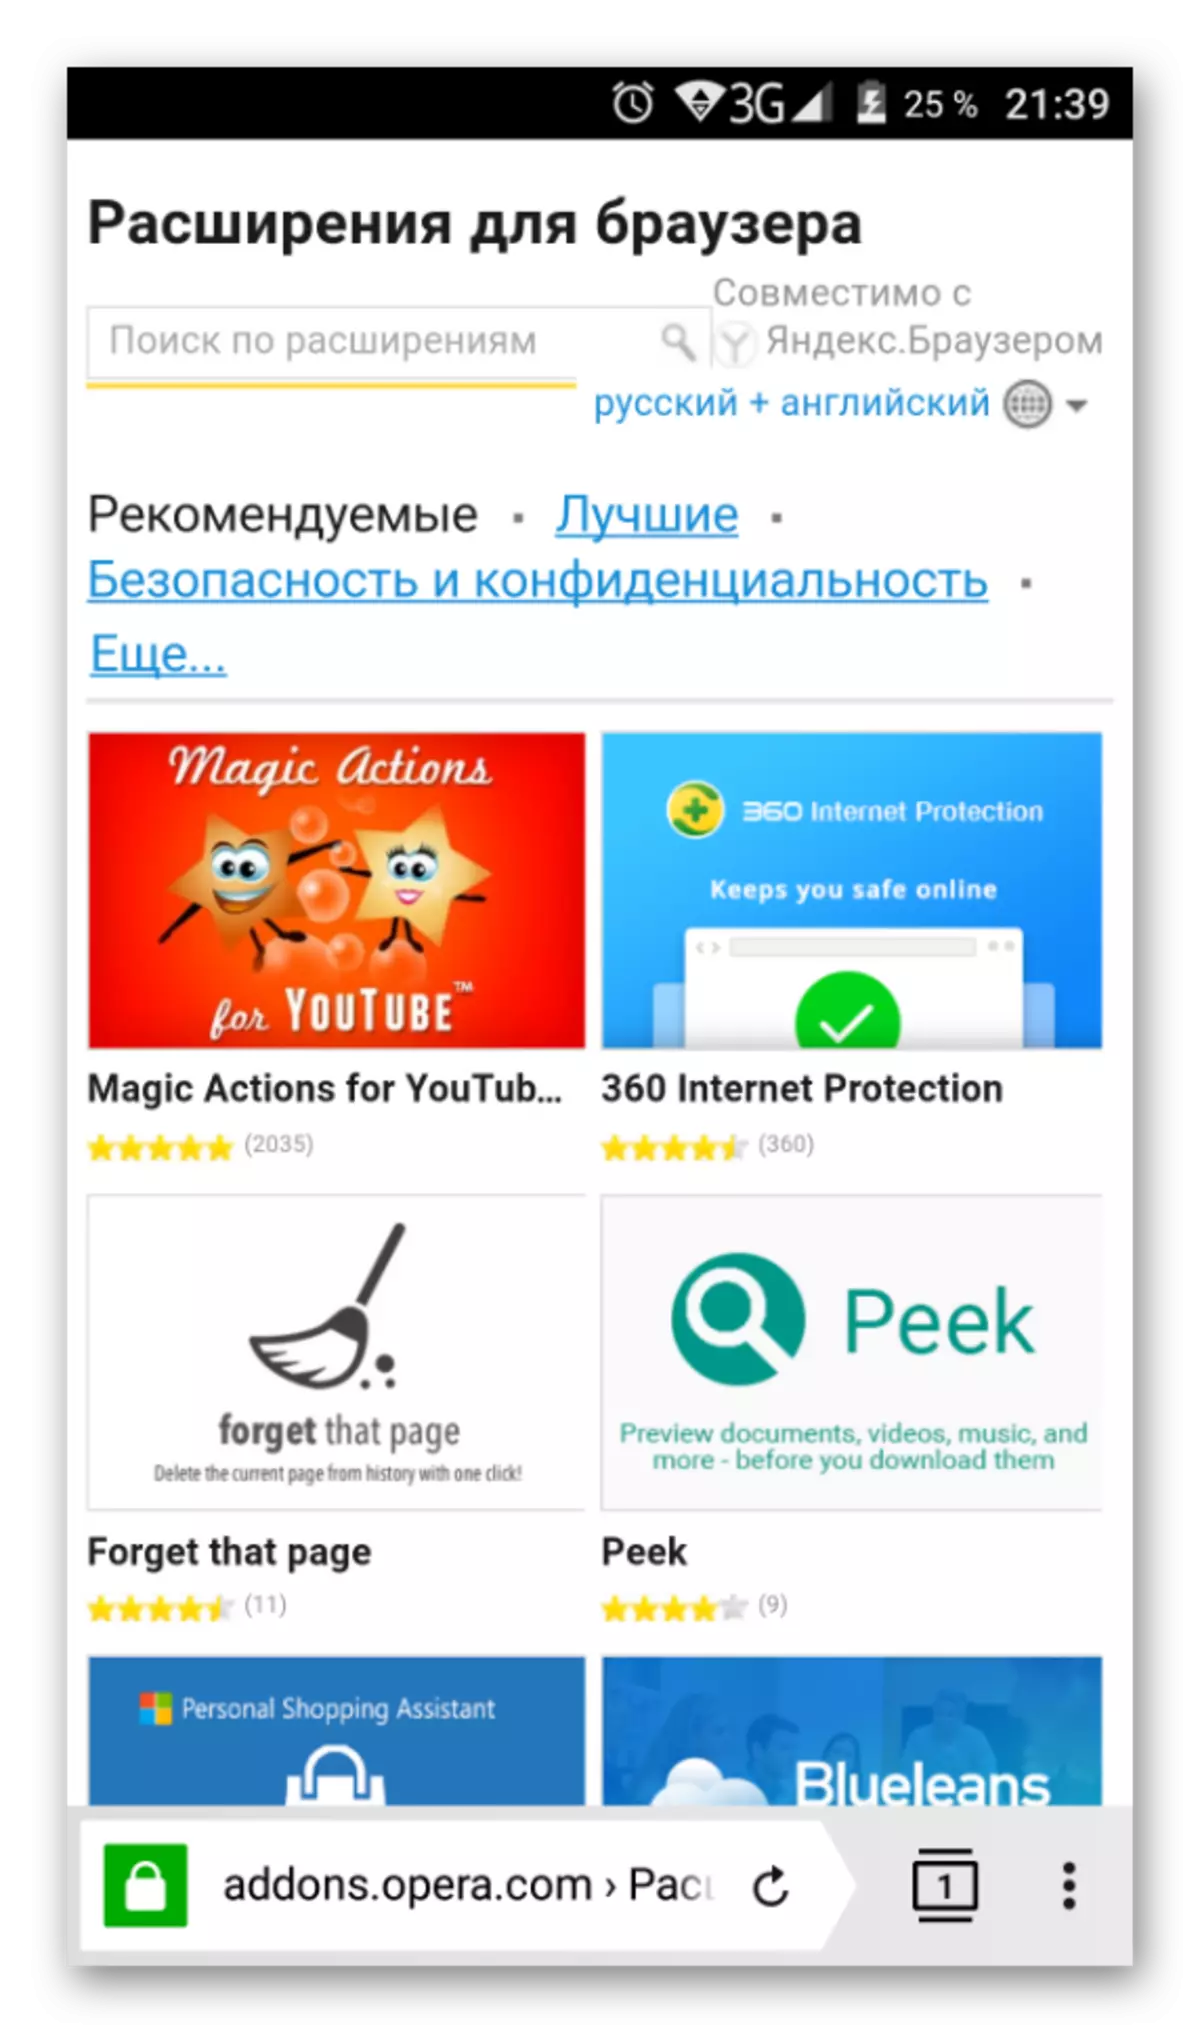 Yandex.browser માં ઓપેરા ઍડૉન્સનું મોબાઇલ સંસ્કરણ